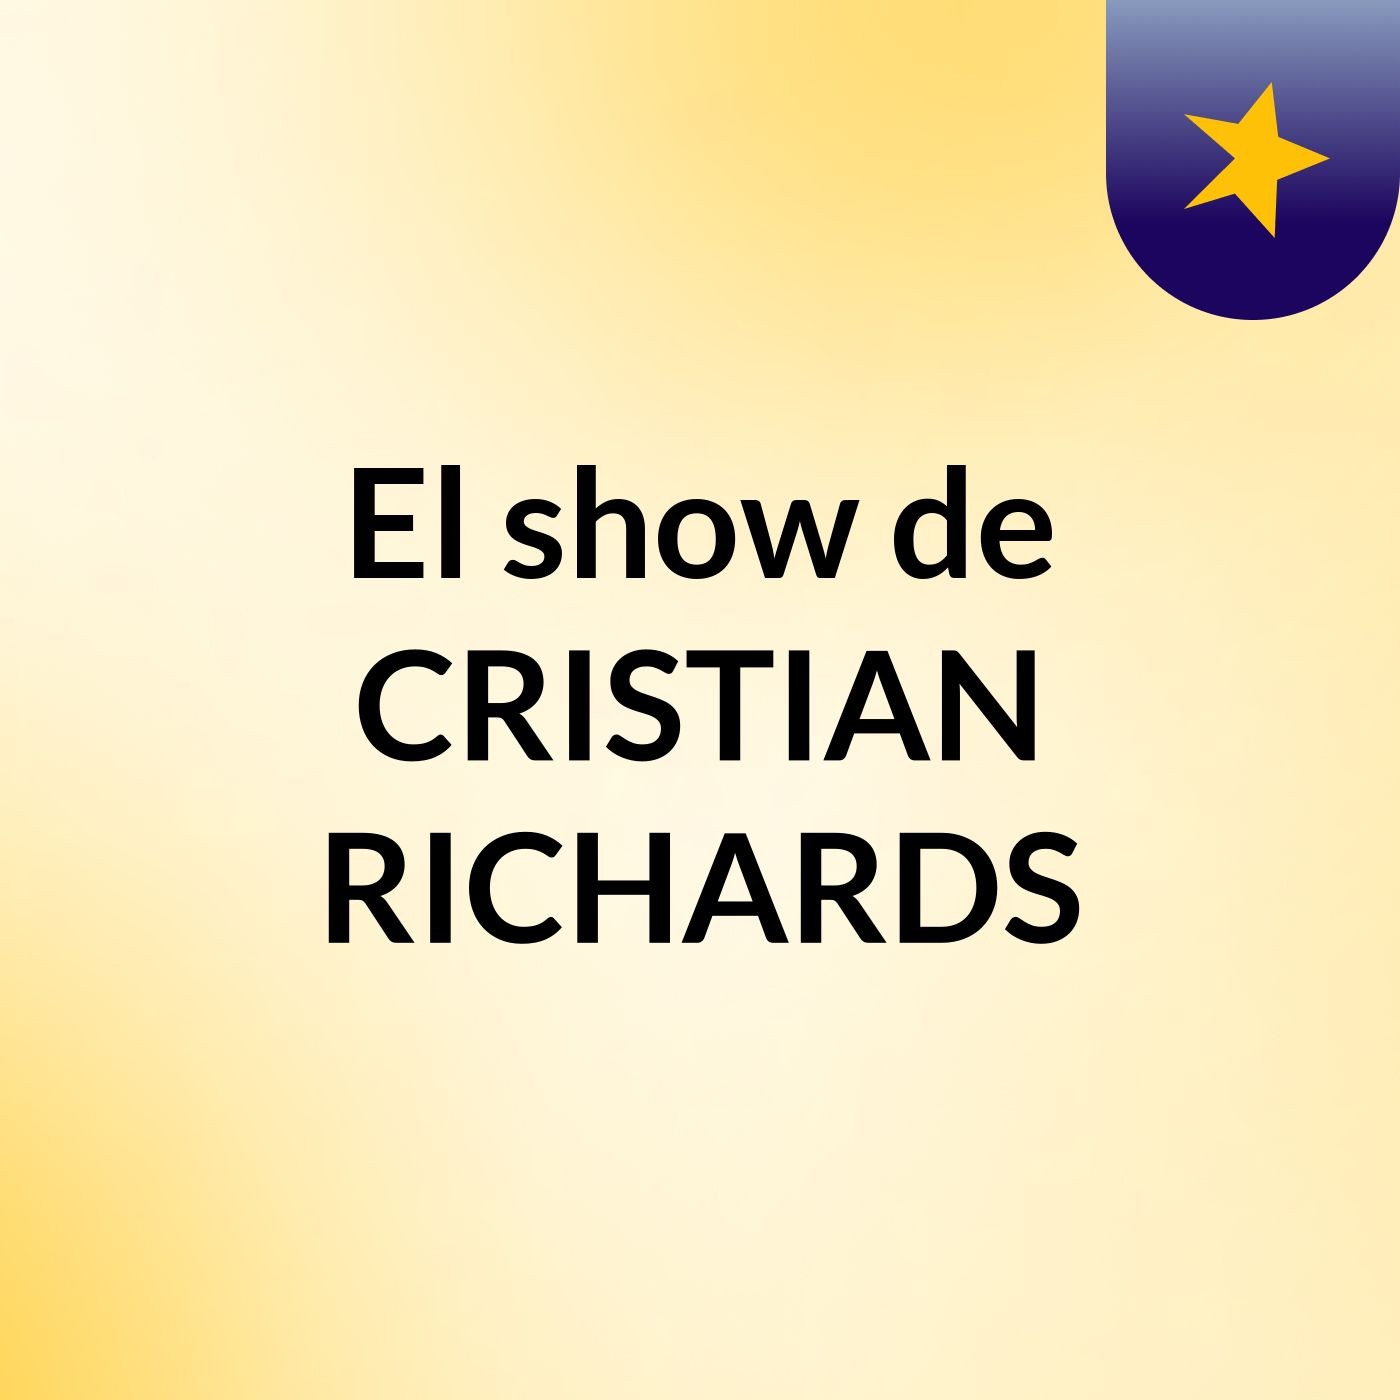 El show de CRISTIAN RICHARDS